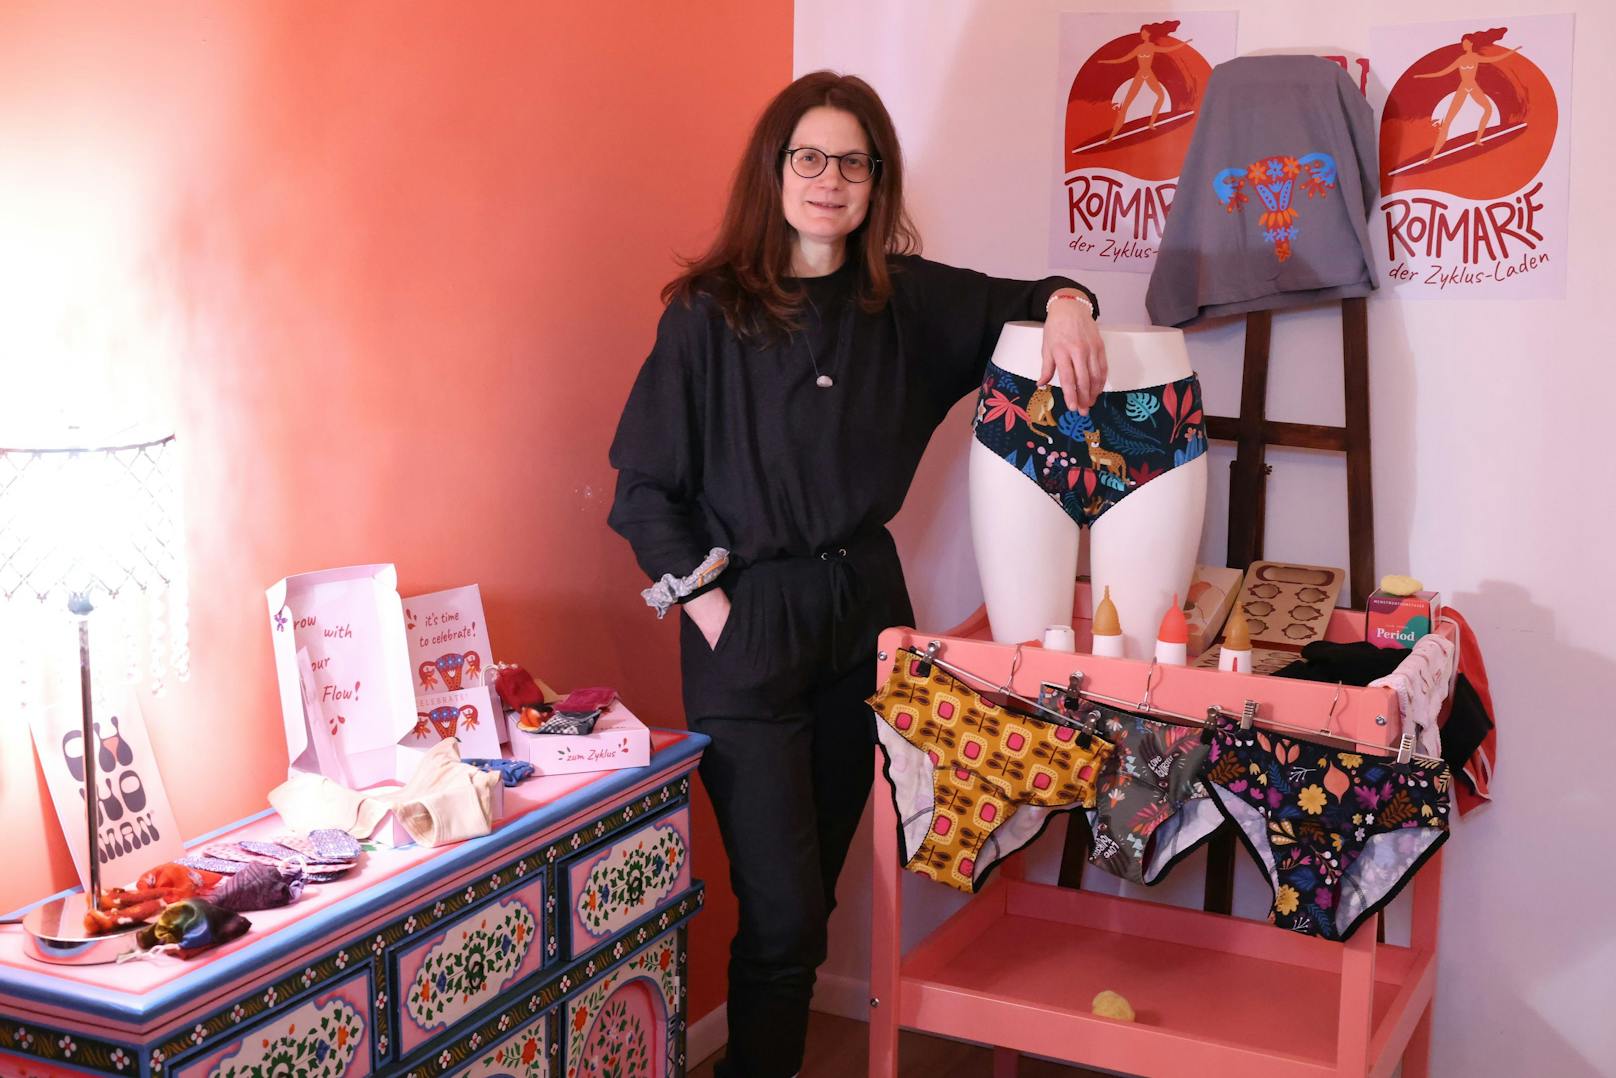 "Die Periode ist keine Krankheit", sagt Angelika Burgsteiner. Die 48-jährige startete mit "Rotmarie" einen Onlineshop für Menstruationsprodukte, will das Thema enttabuisieren.